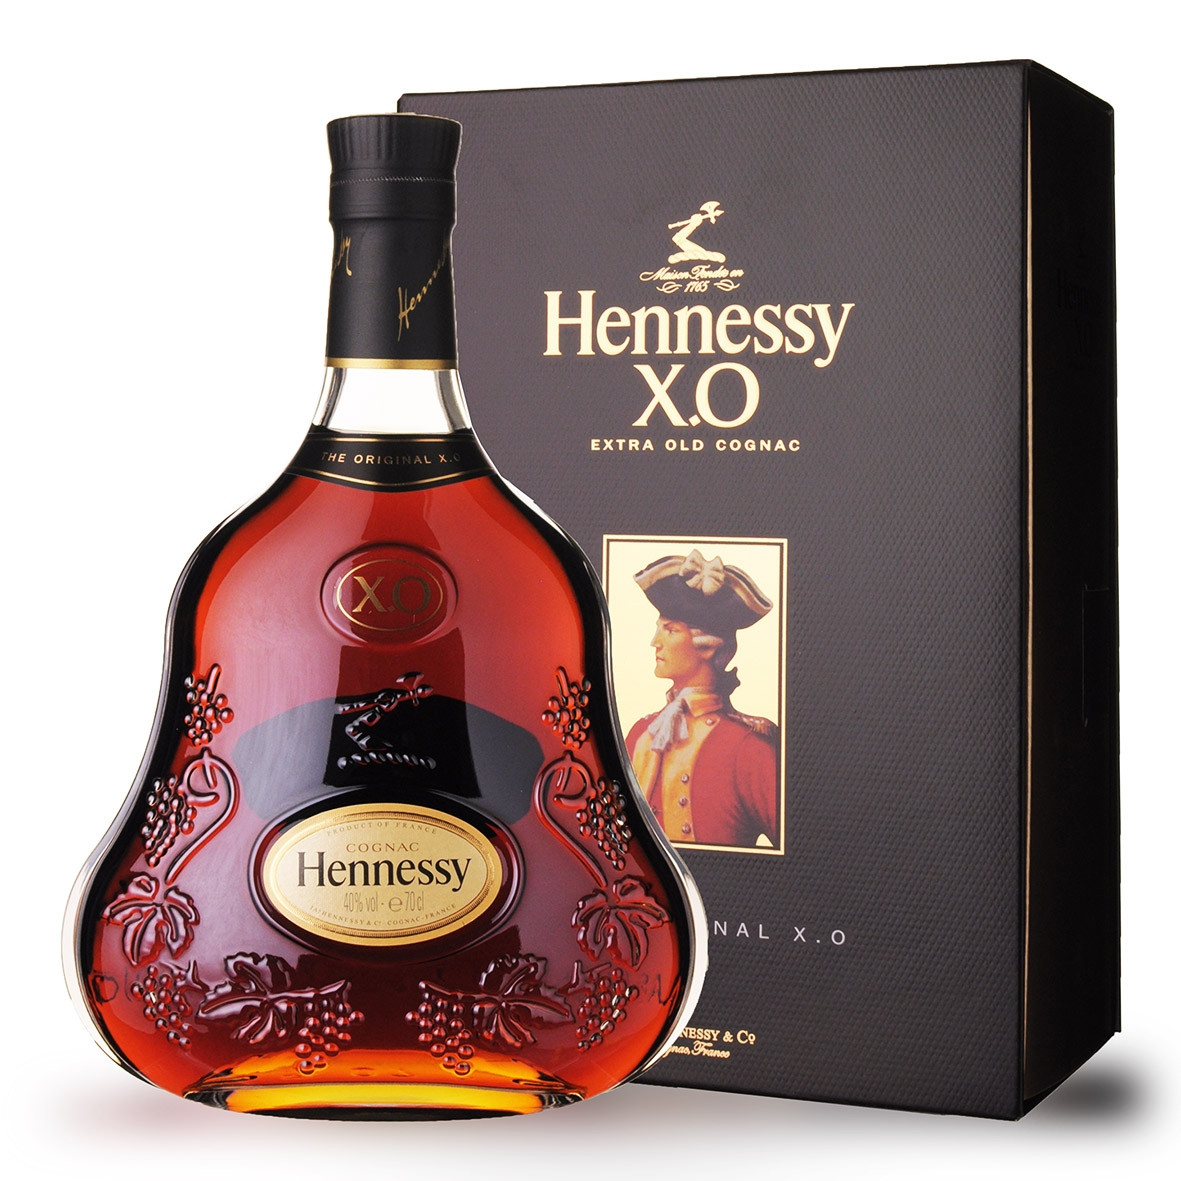 Achat de Cognac Hennessy XO 70cl vendu en Coffret sur notre site -  Odyssee-vins